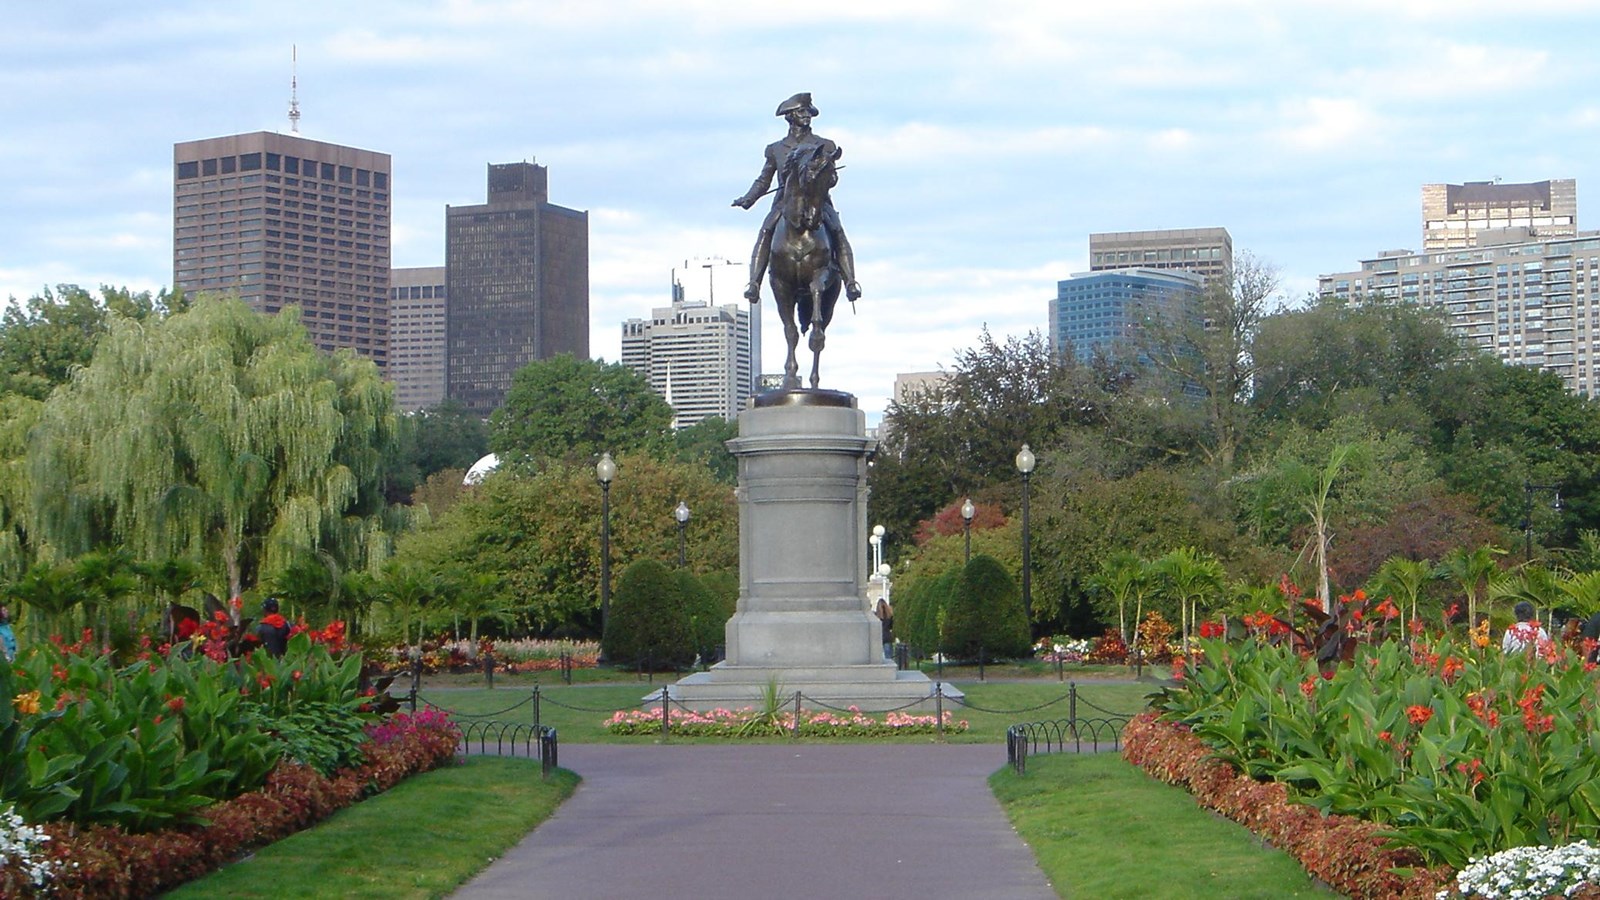 Equestrian statue in a park. 